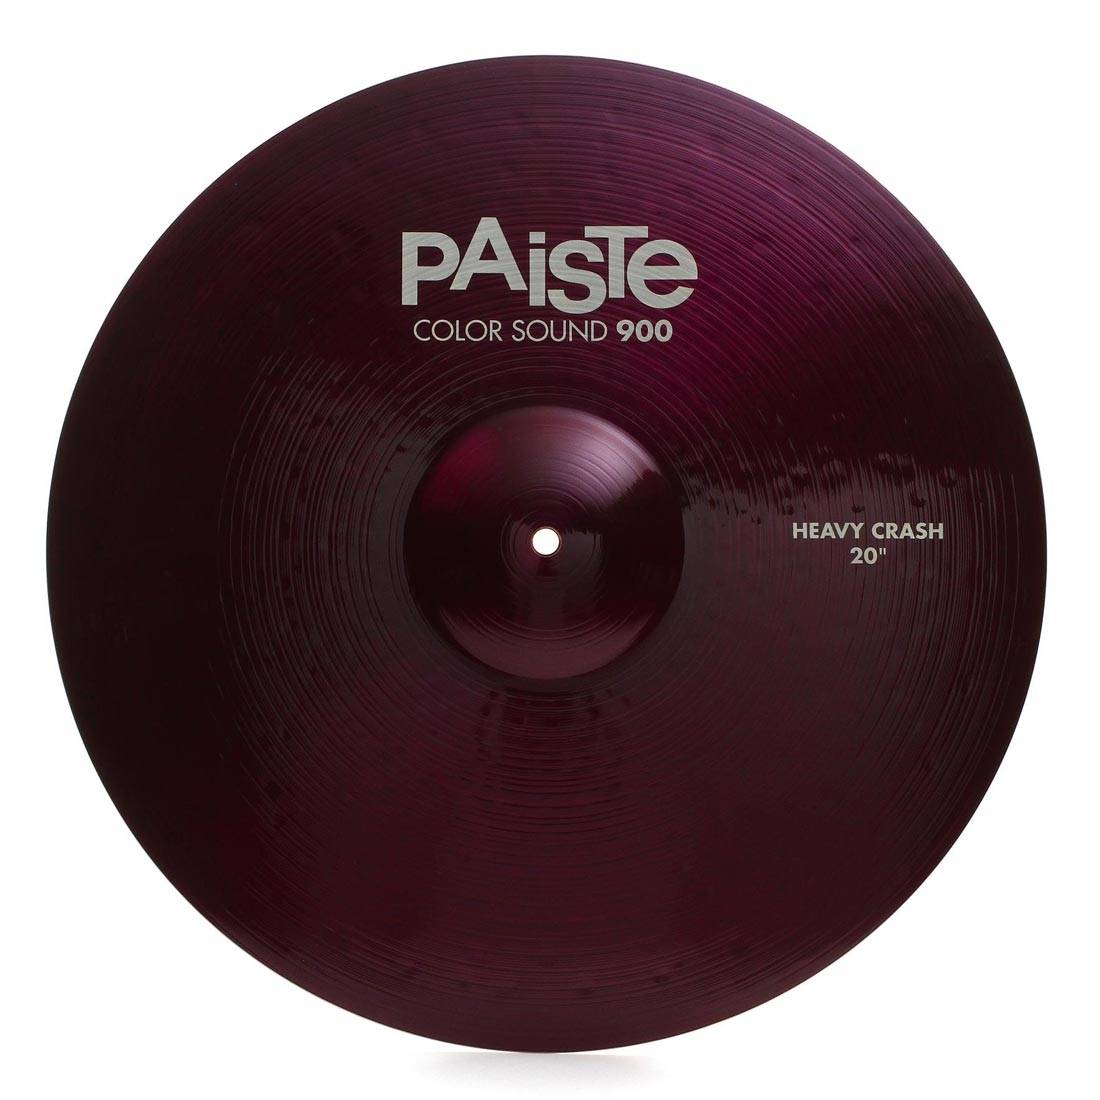 PAISTE 900 Color Sound 20'' Purple Heavy Crash